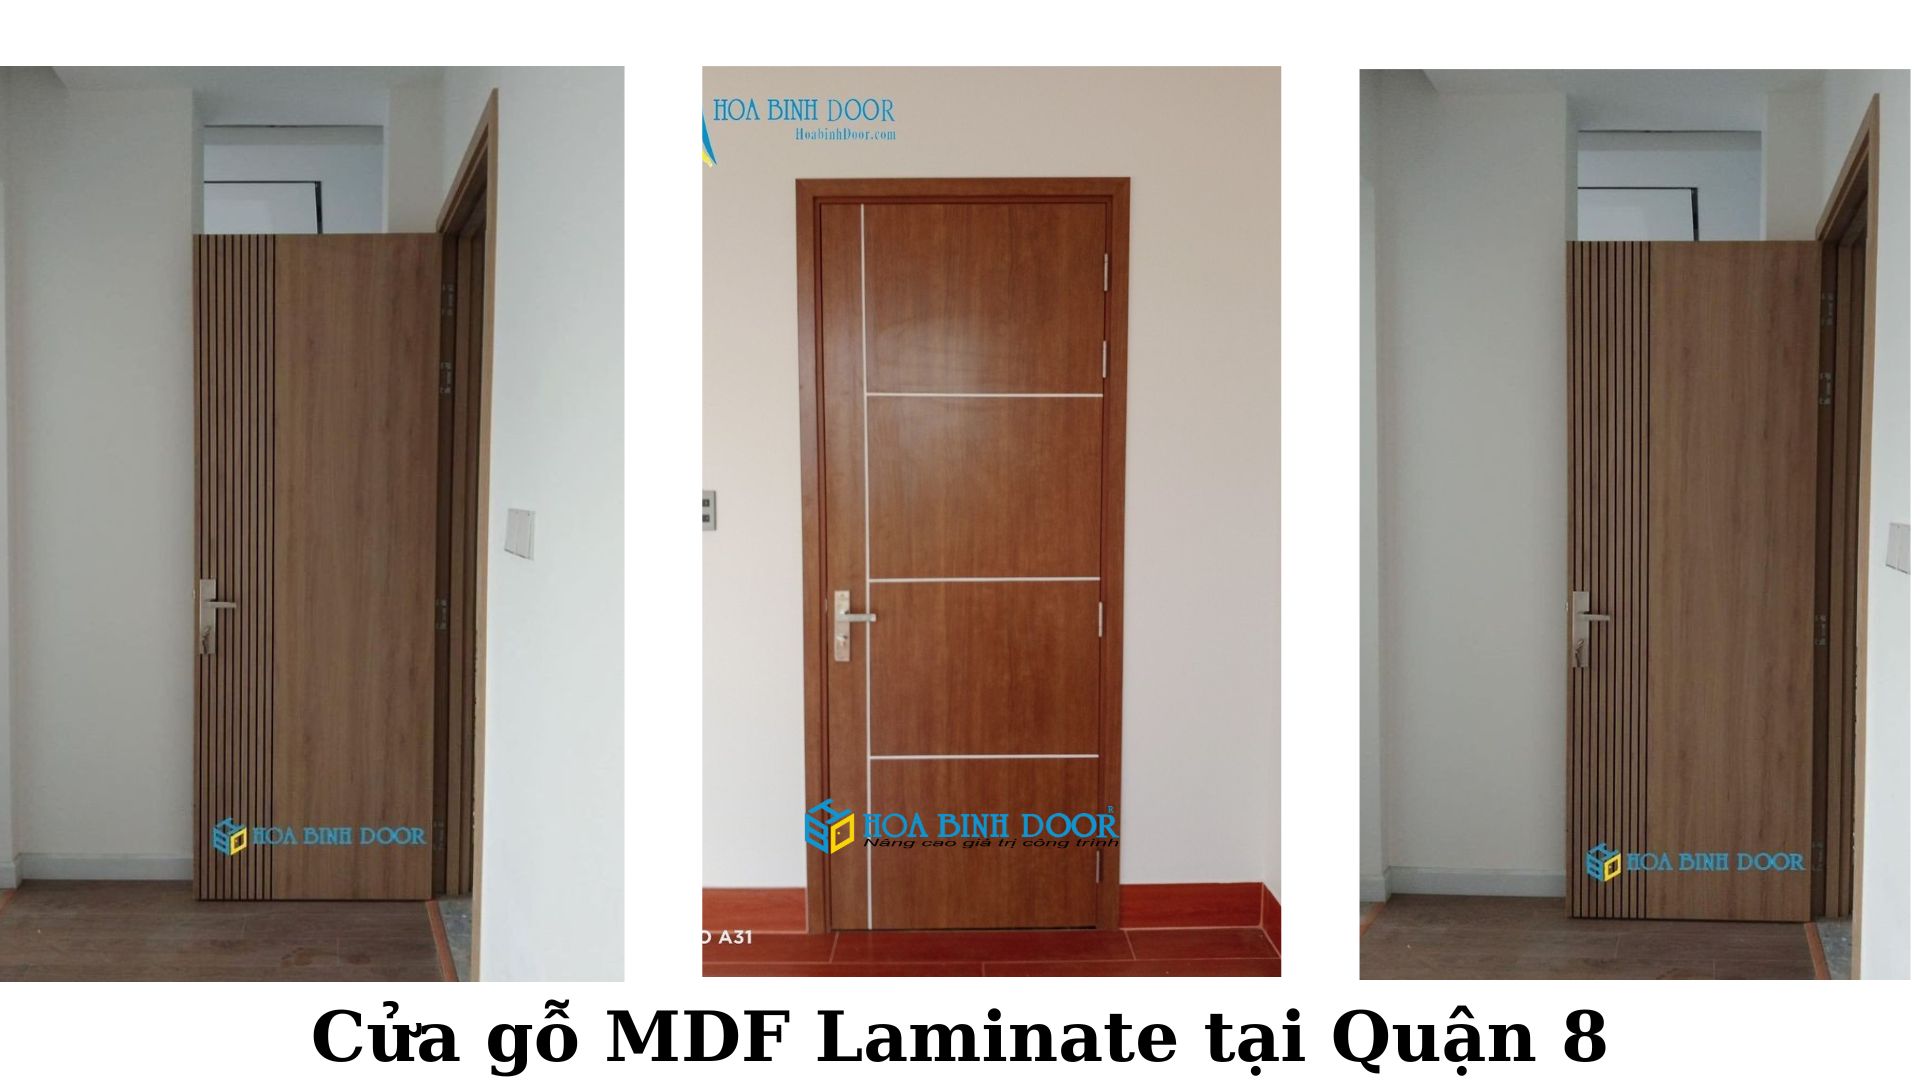 Cửa MDF Laminate tại Quận 8